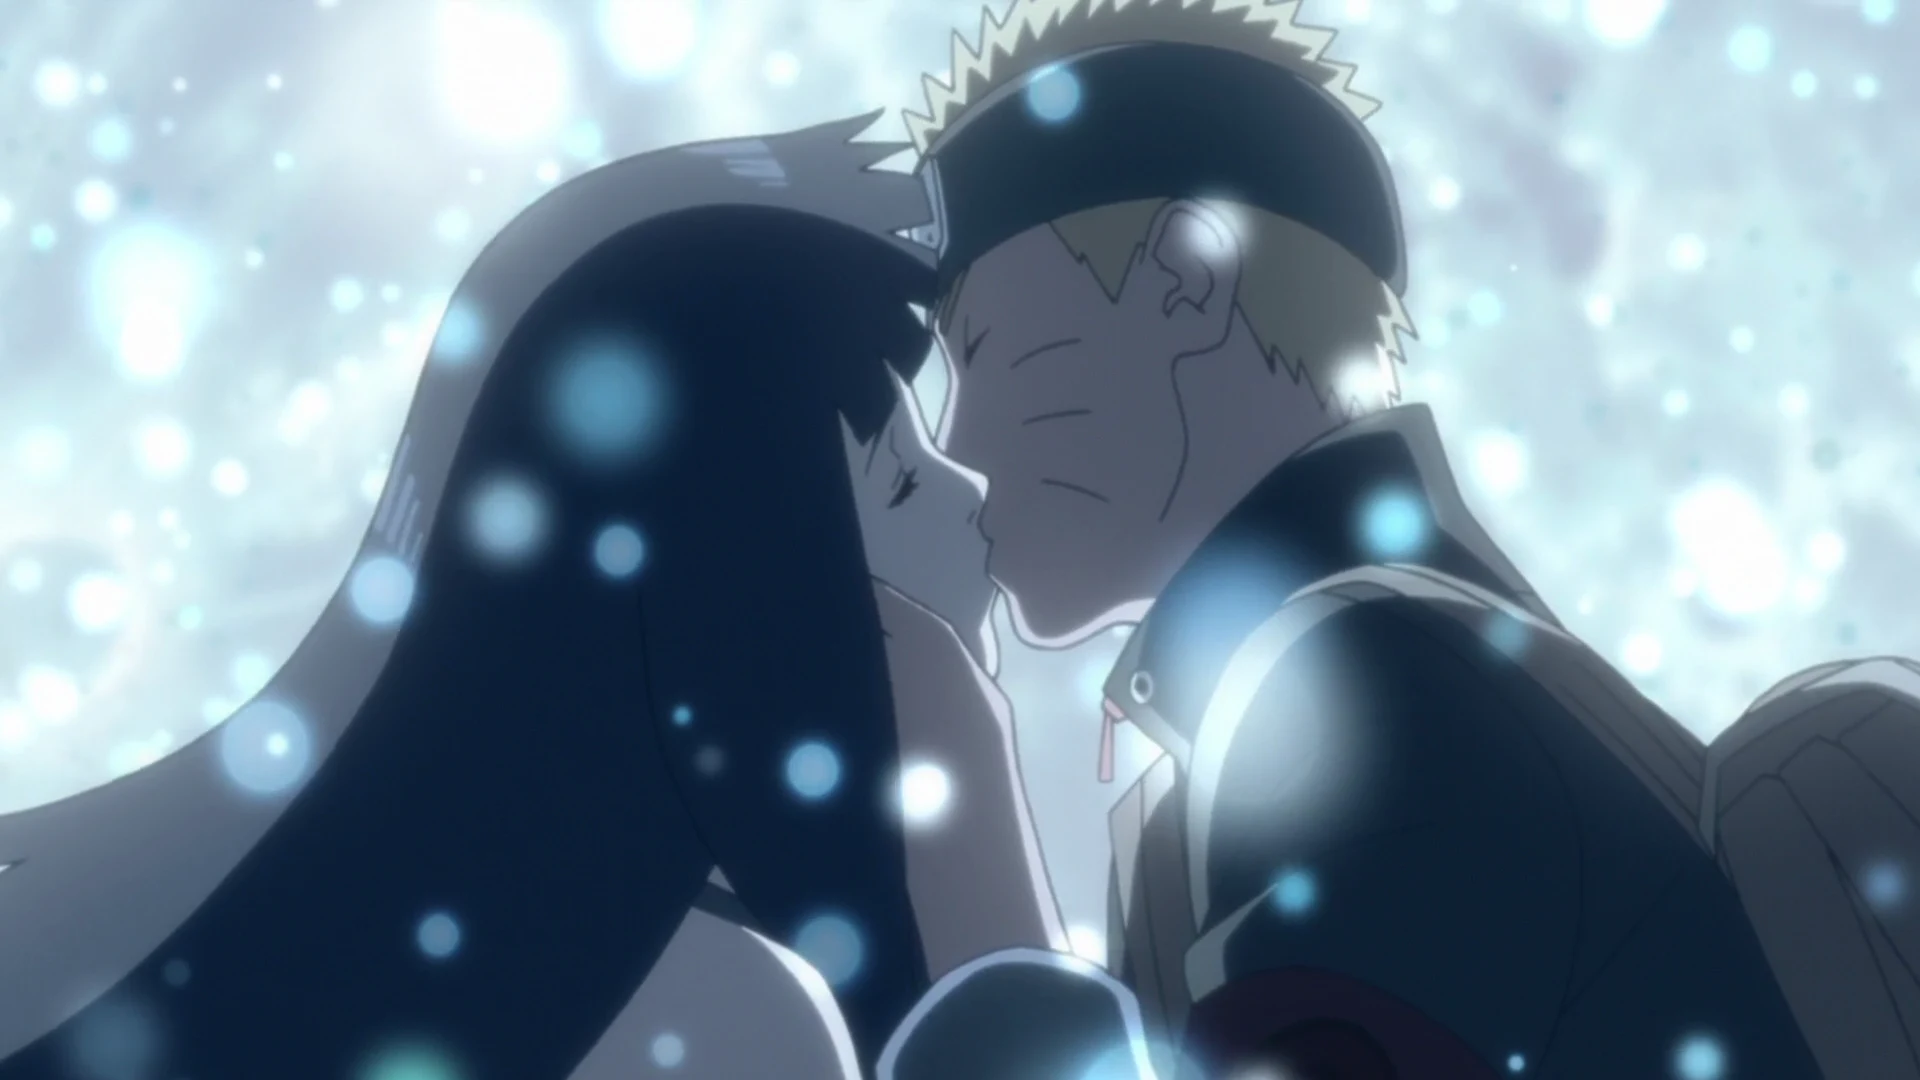 Naruto and Hinata kissing